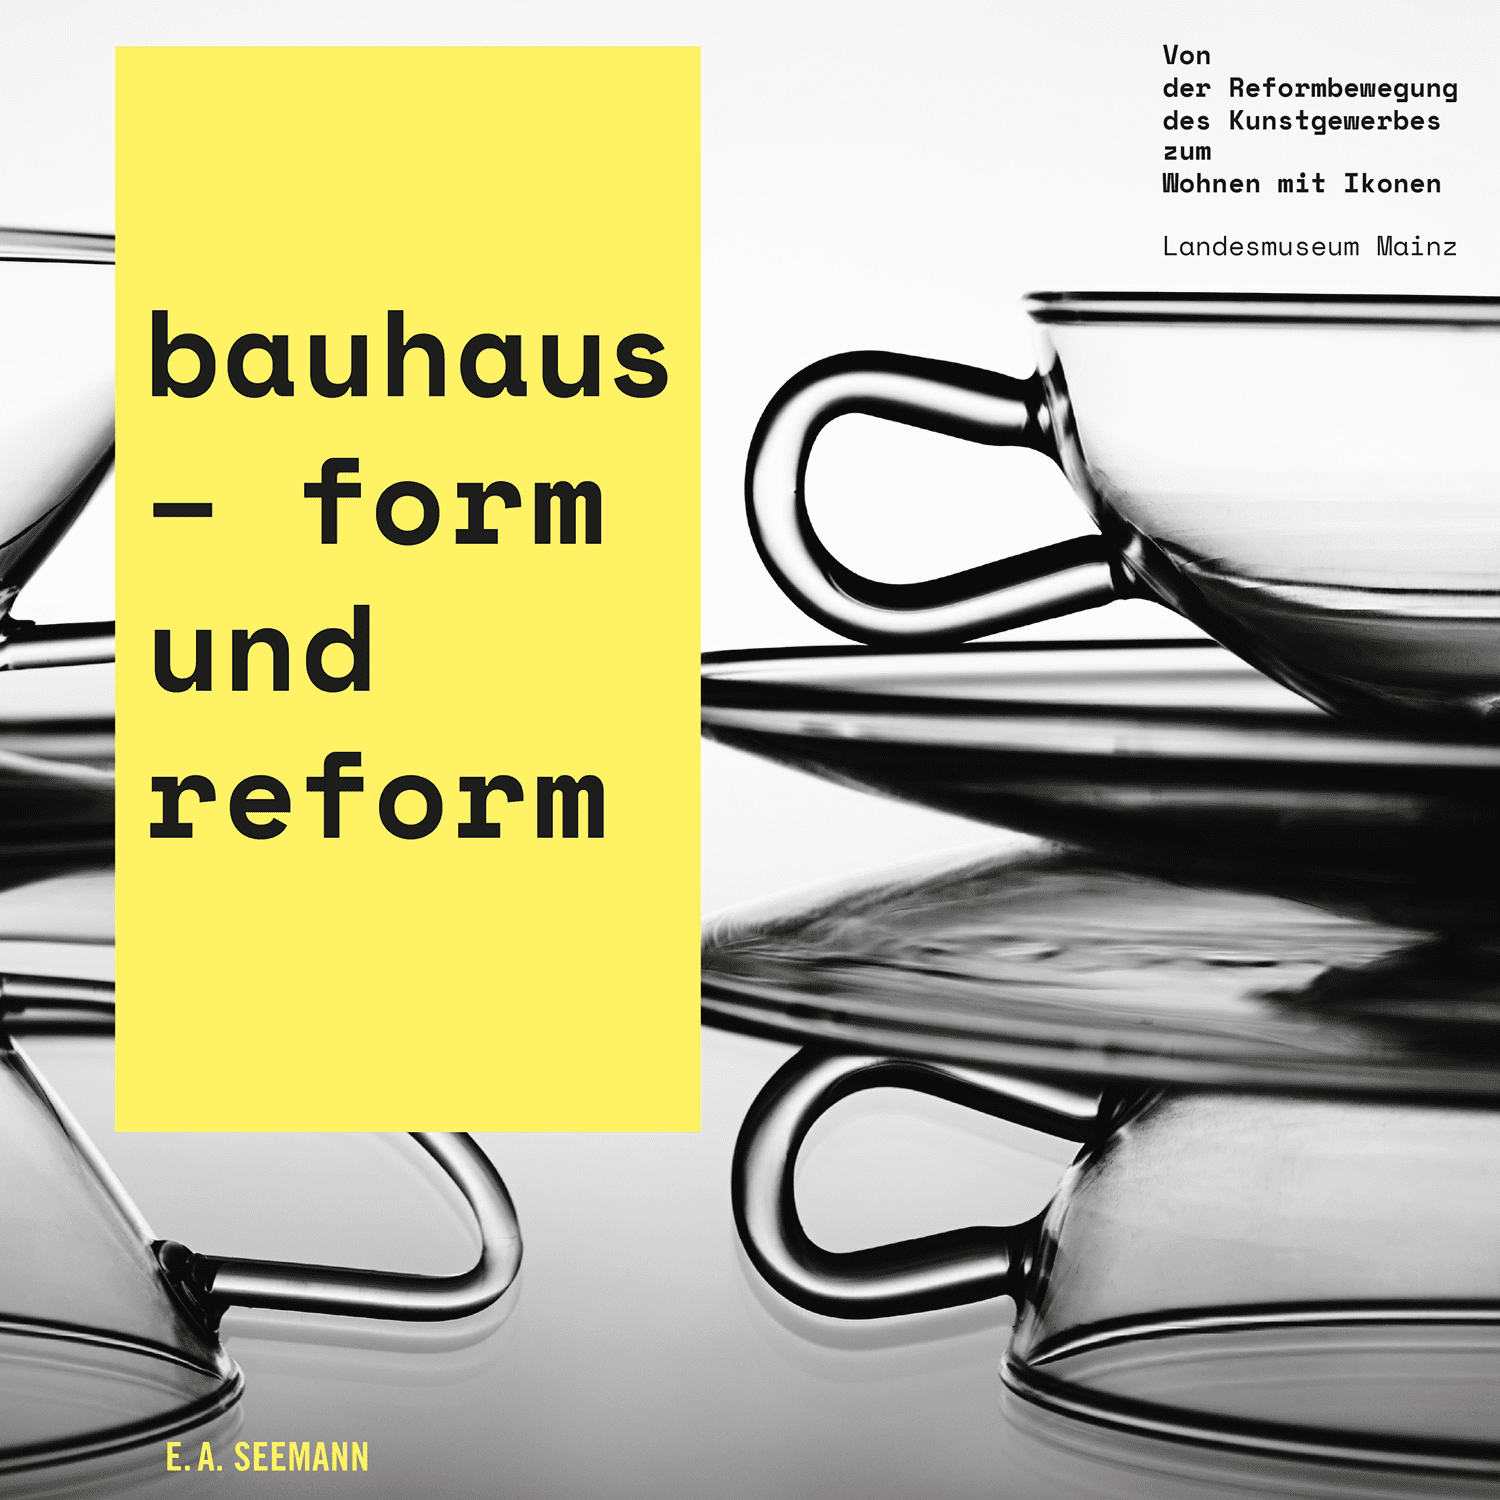 Изображение баухаус - форма и реформа